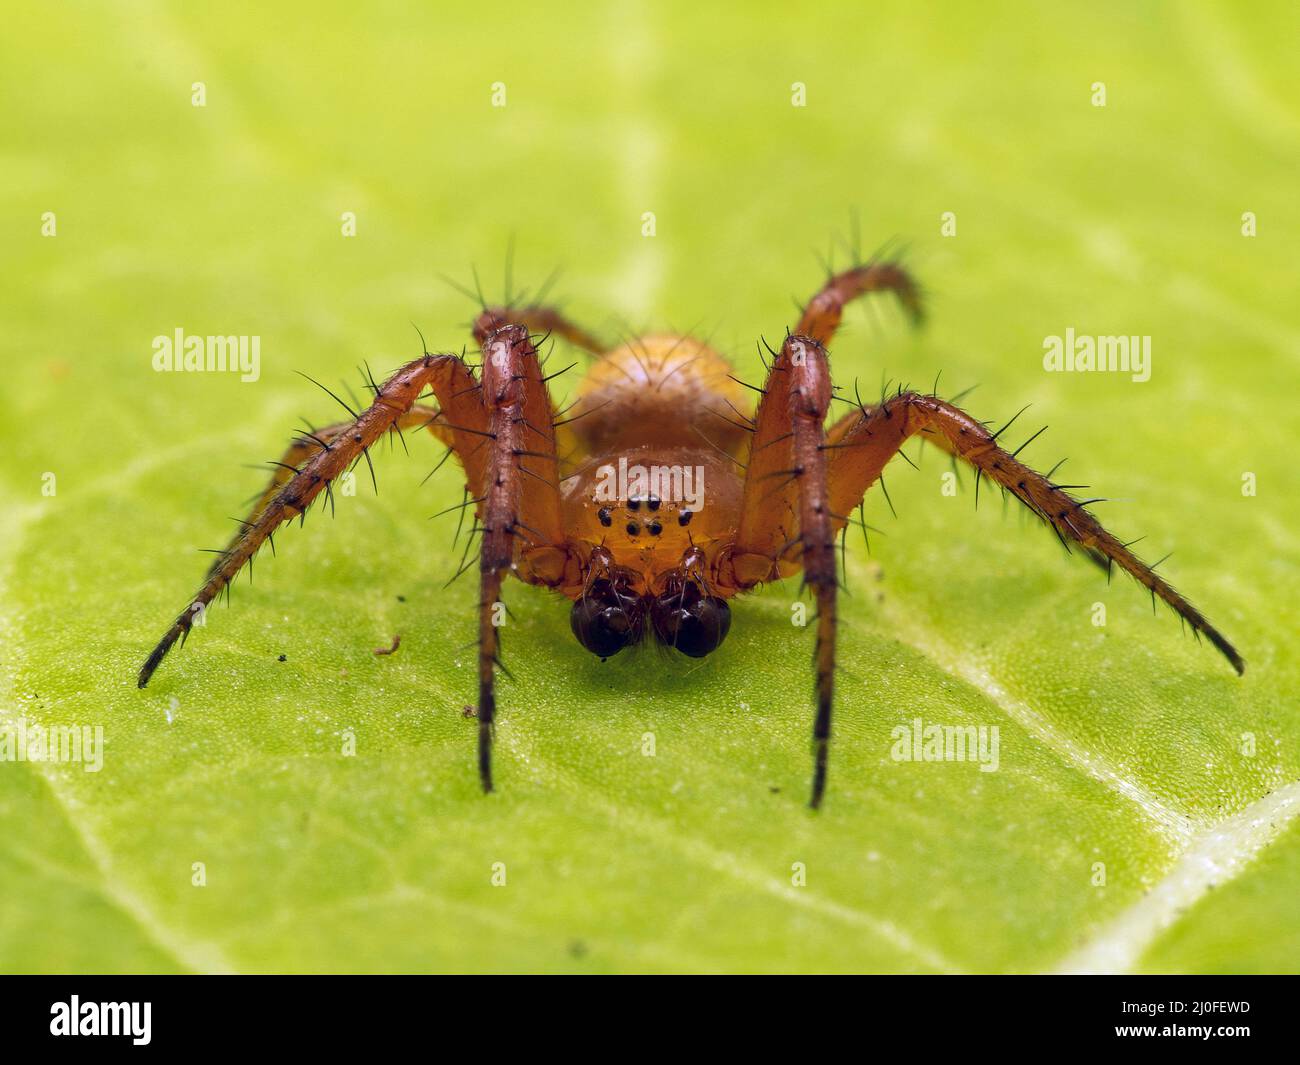 Close-up portrait of a male sixspotted orbweaver spider, Araniella displicata, facing the camera. Ladner, Delta, British Columbia, Canada Stock Photo